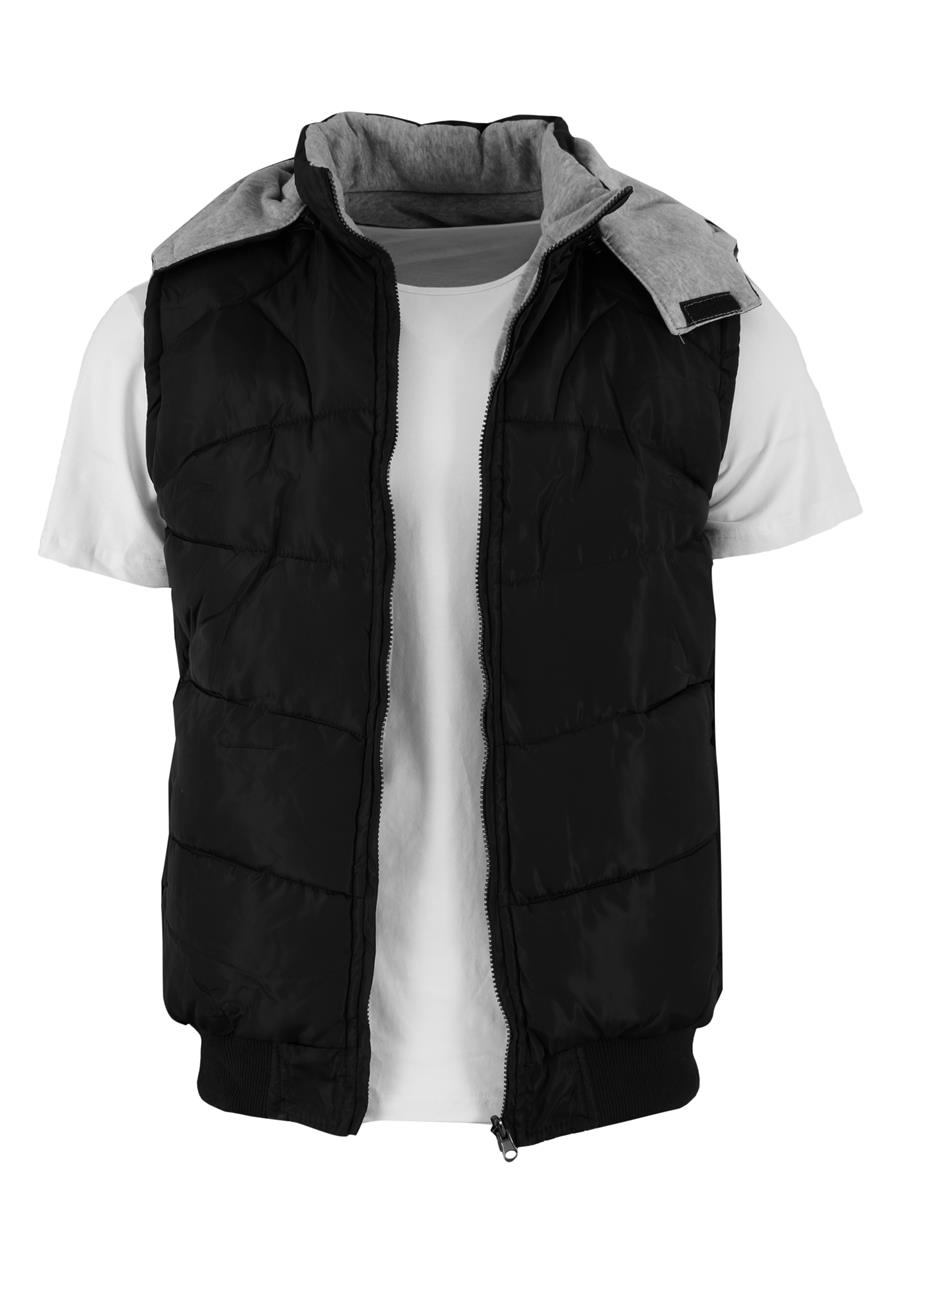 Αντρικό αμάνικο jacket διπλής όψης. Basic collection.